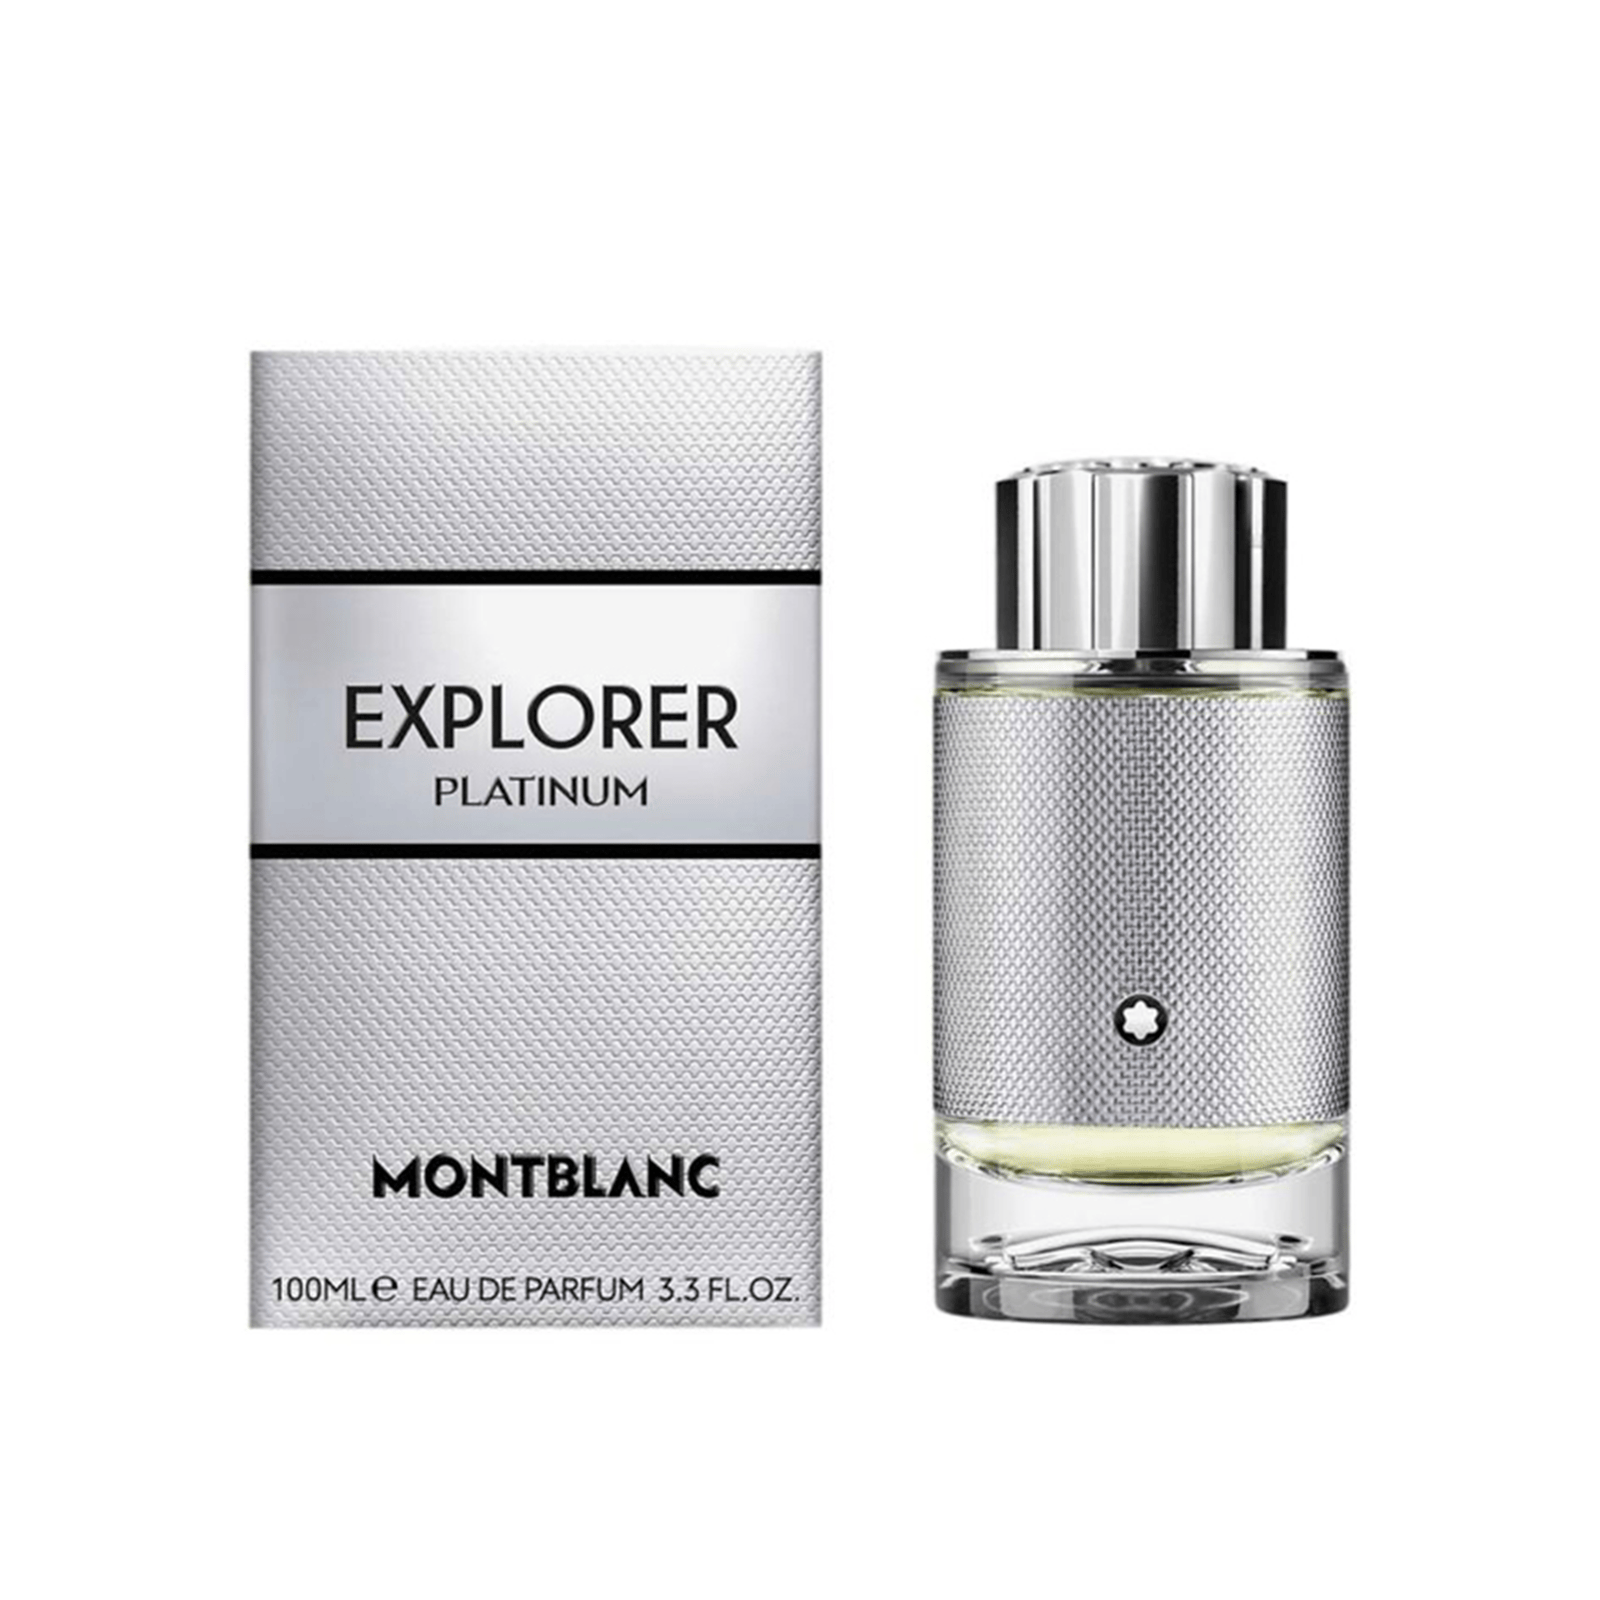 Montblanc Explorer Platinum Eau de Parfum 100ml (3.3 fl oz)